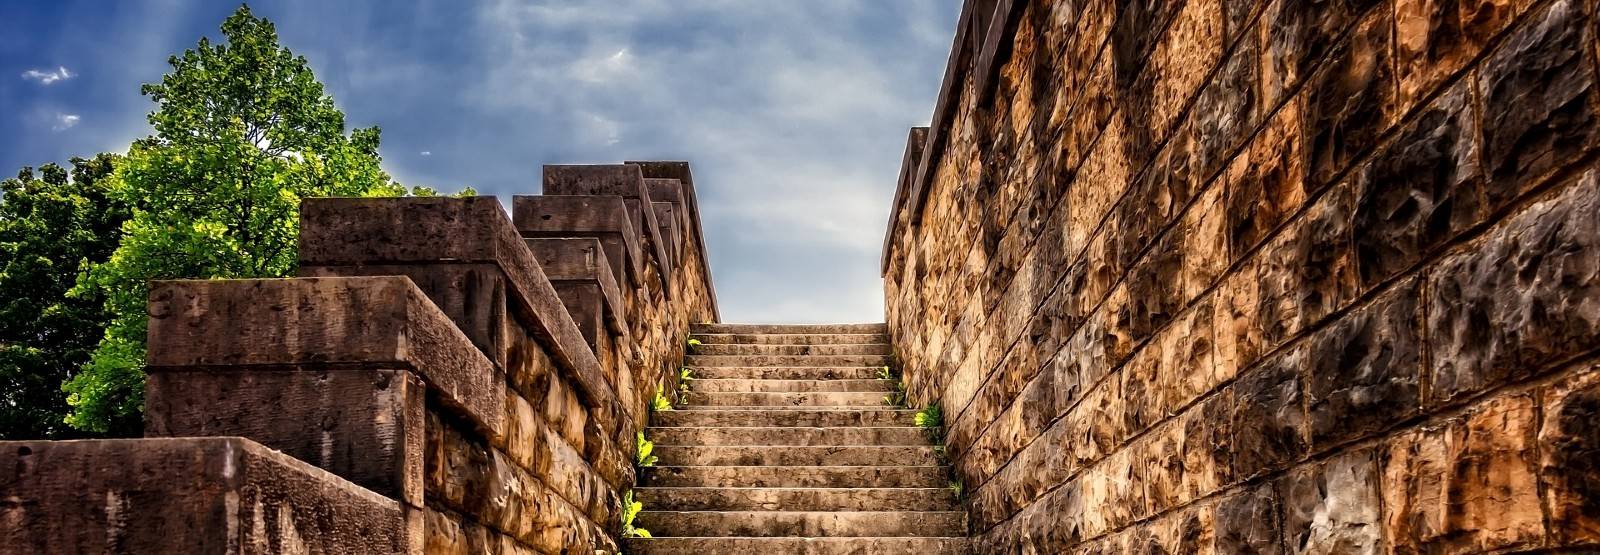 Open stairway between stone walls